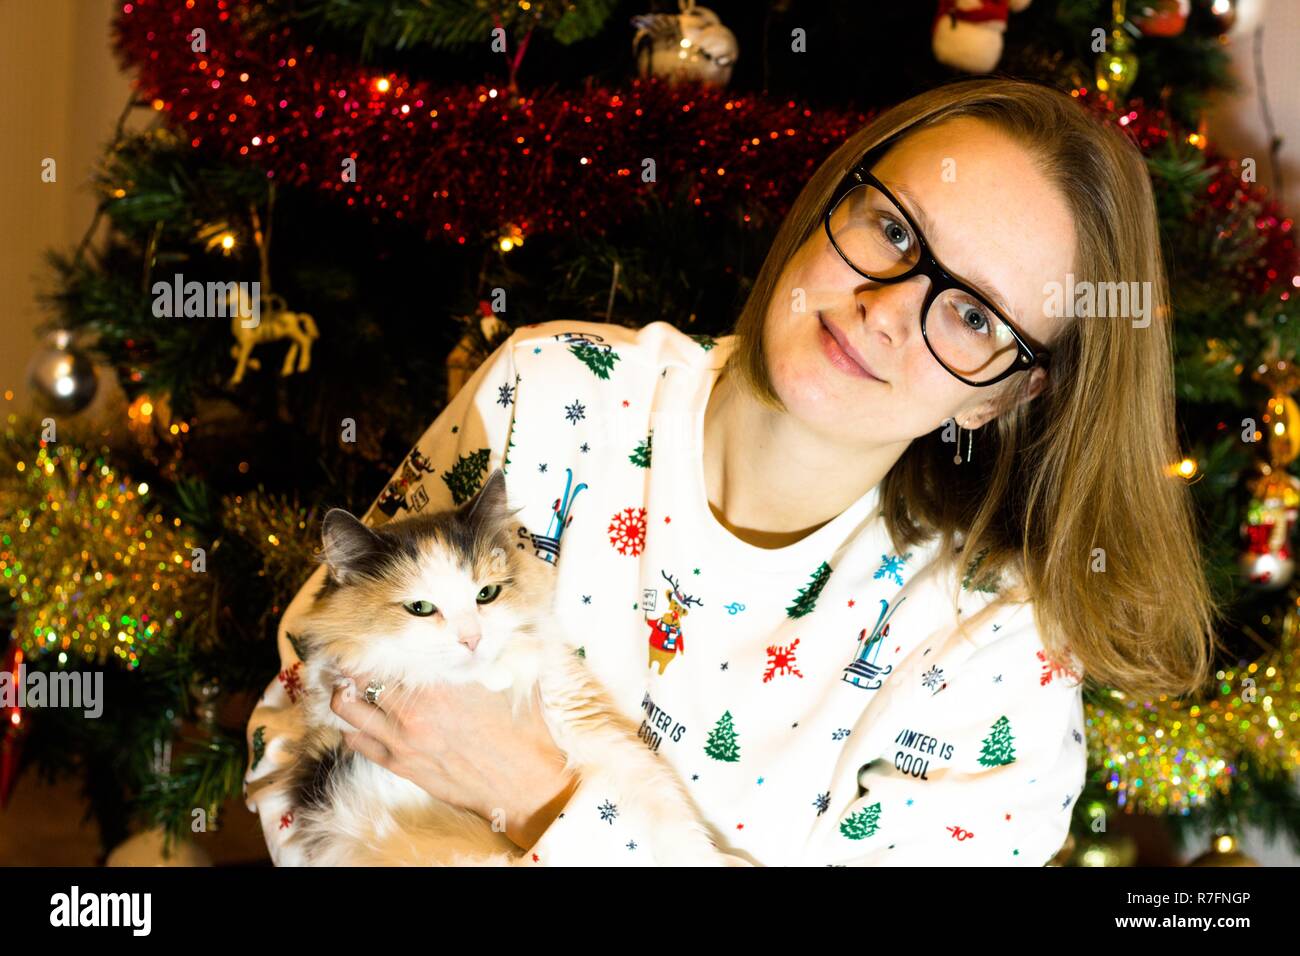 An Weihnachten und das neue Jahr Mädchen am Weihnachtsbaum sitzen mit einer Katze in den Händen. Der Baum ist in der Vorfreude auf Weihnachten dekoriert Stockfoto